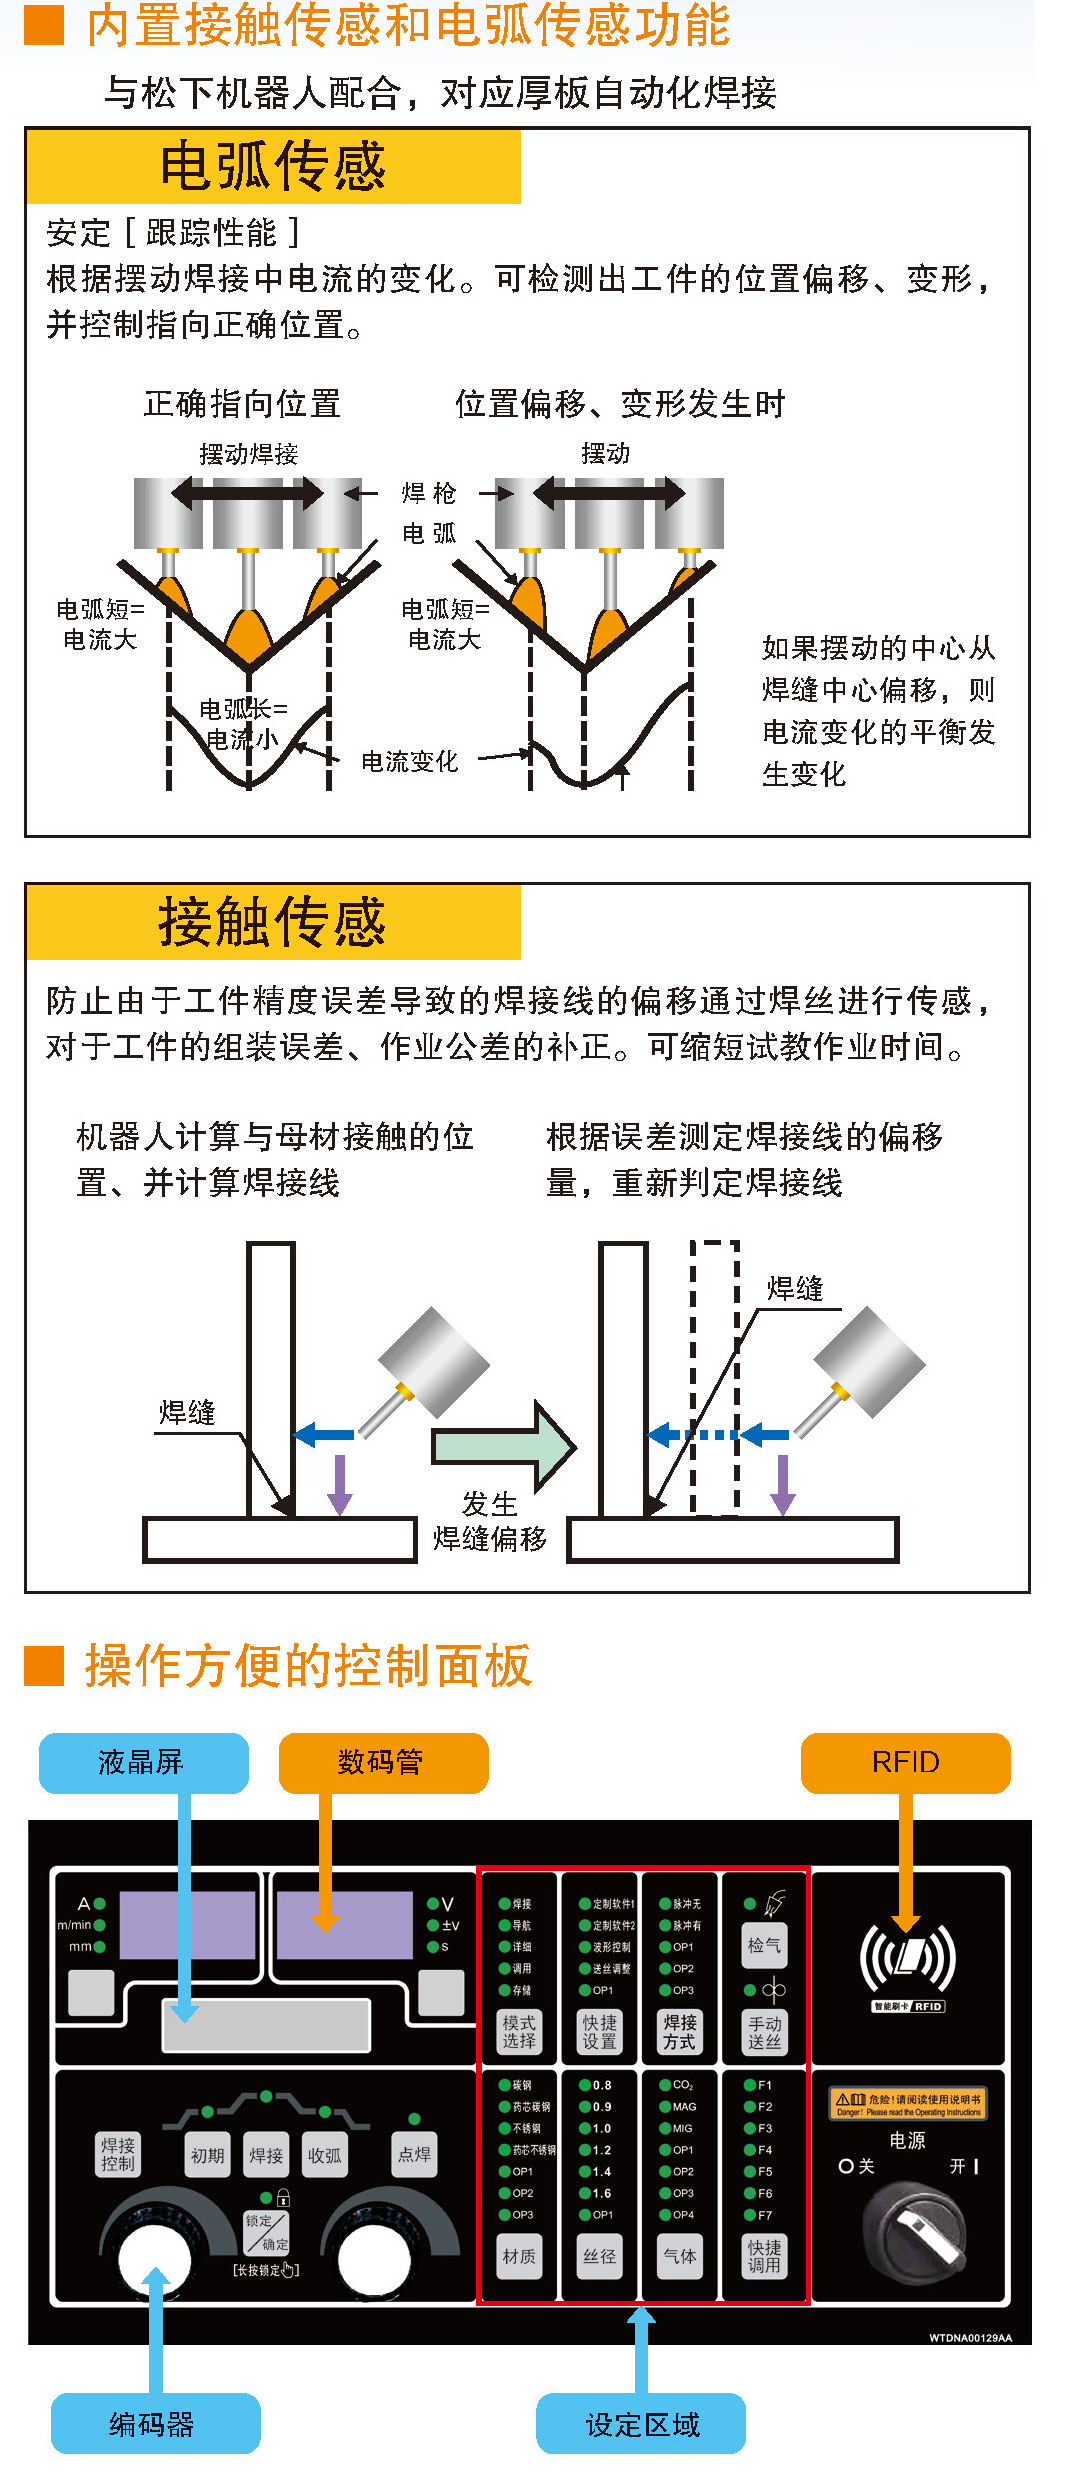 熔化極氣保焊機(700GL5)(圖3)